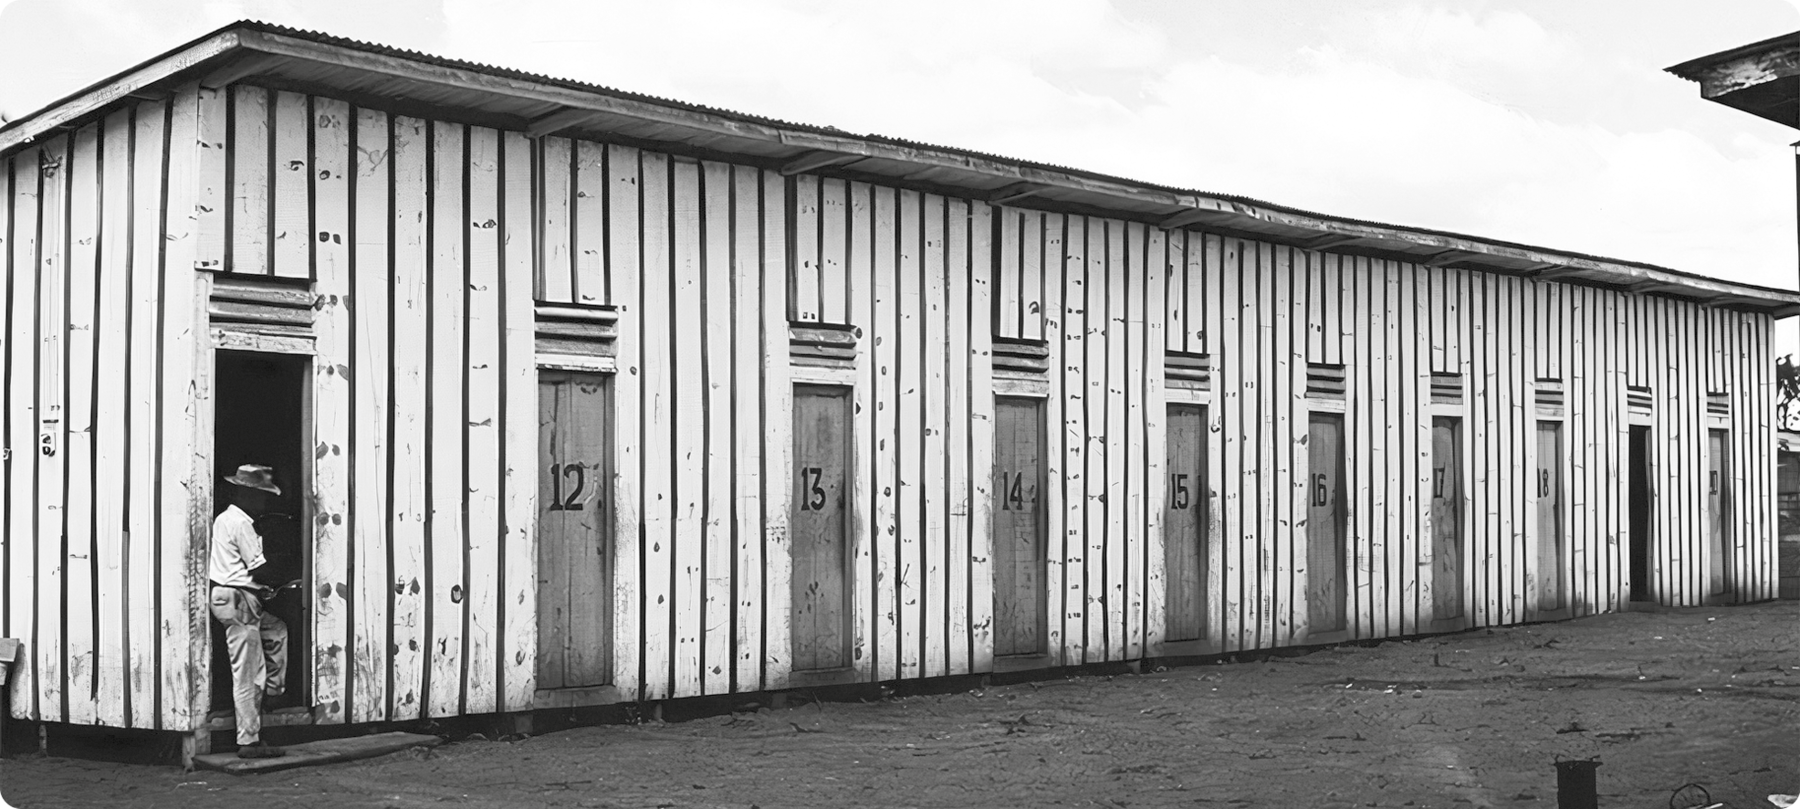 Fotografia em preto e branco. Uma construção de madeira com muitas portas. Um homem usando chapéu está de pé em uma das portas.